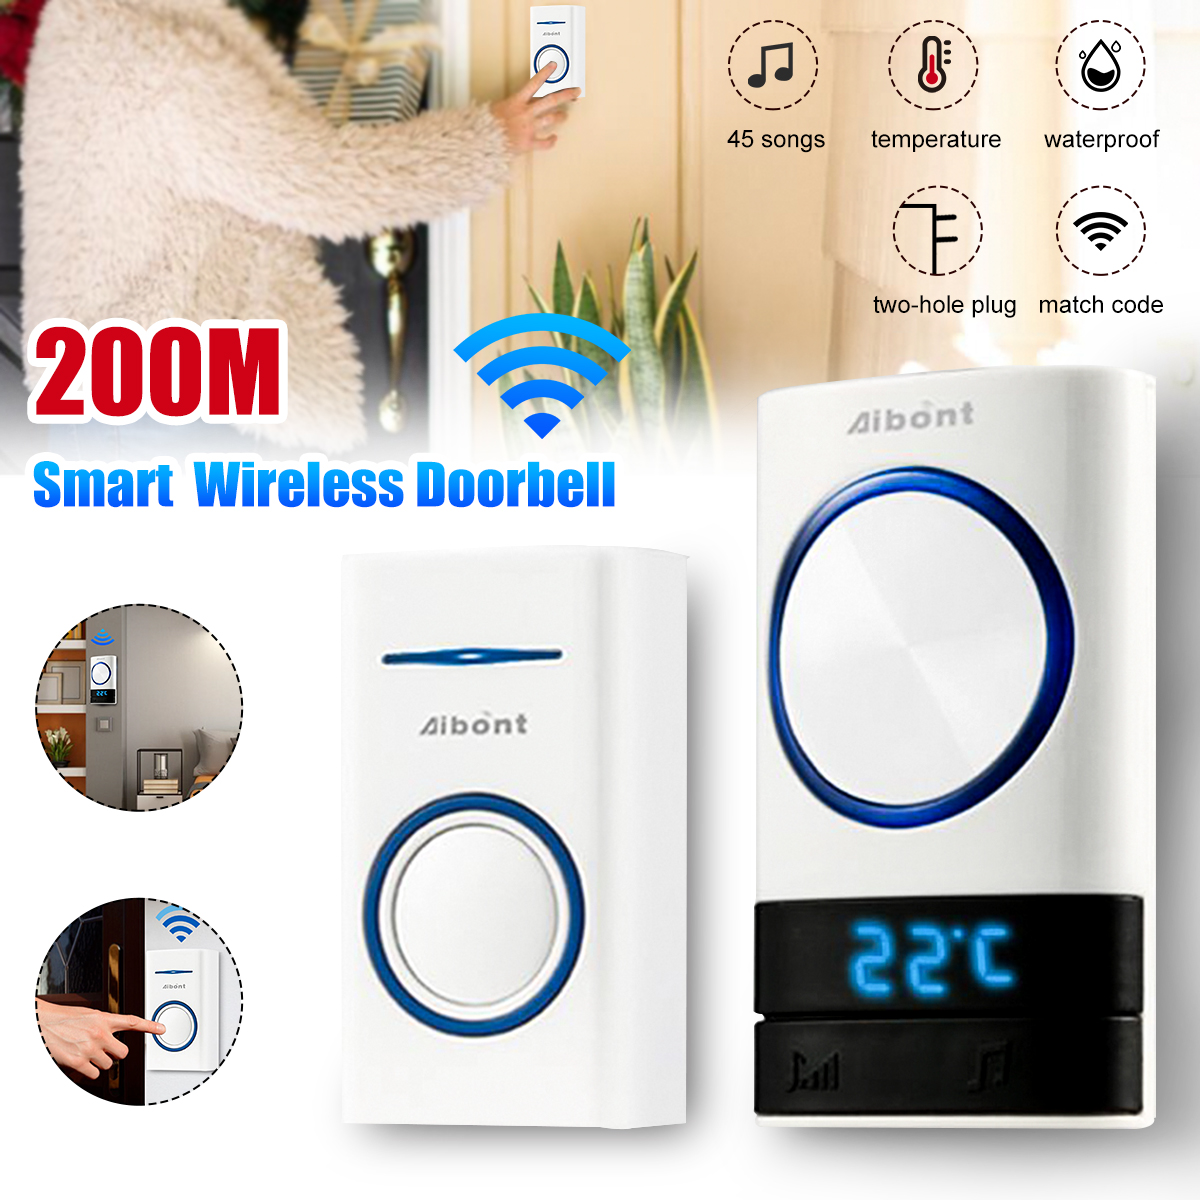 Smart-Wireless-Doorbell-45-Songs-Polyphonic-Ringtones-200m-Transmission-Door-Bell-1733573-1